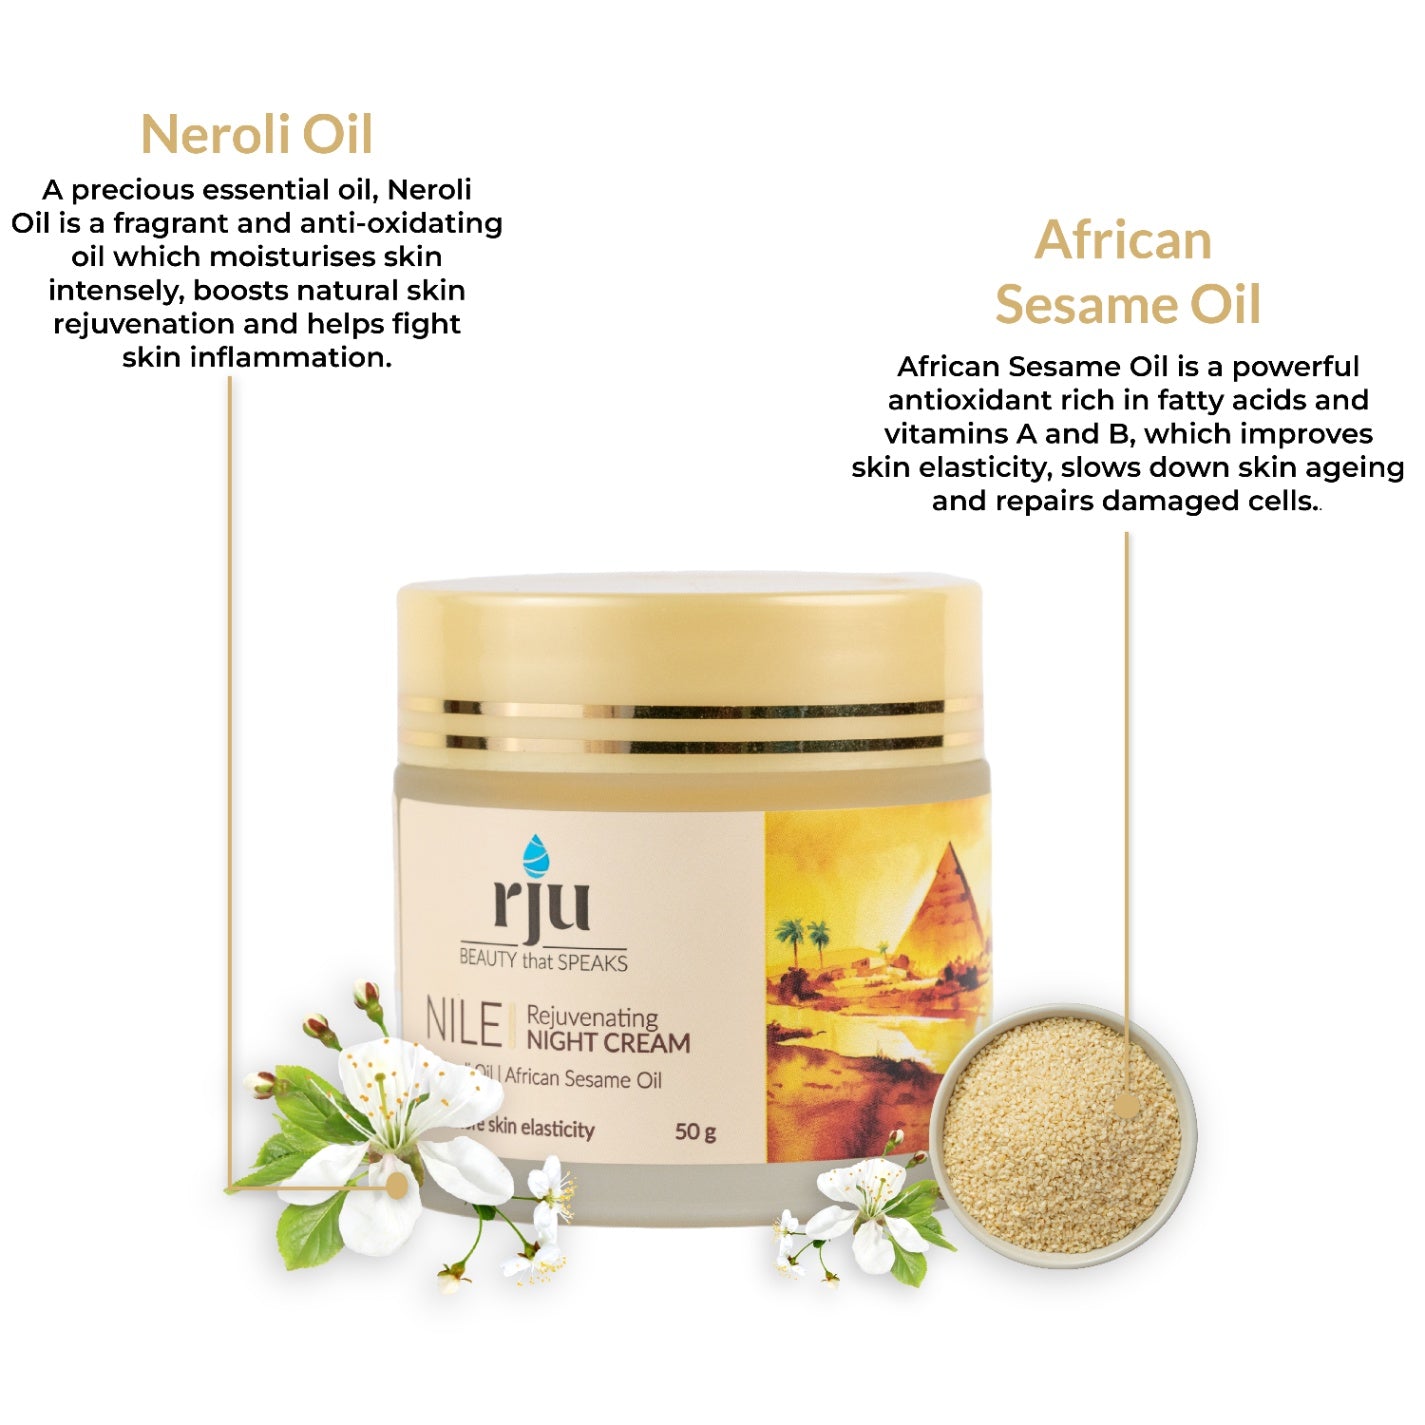 Nile Rejuvenating Night Cream